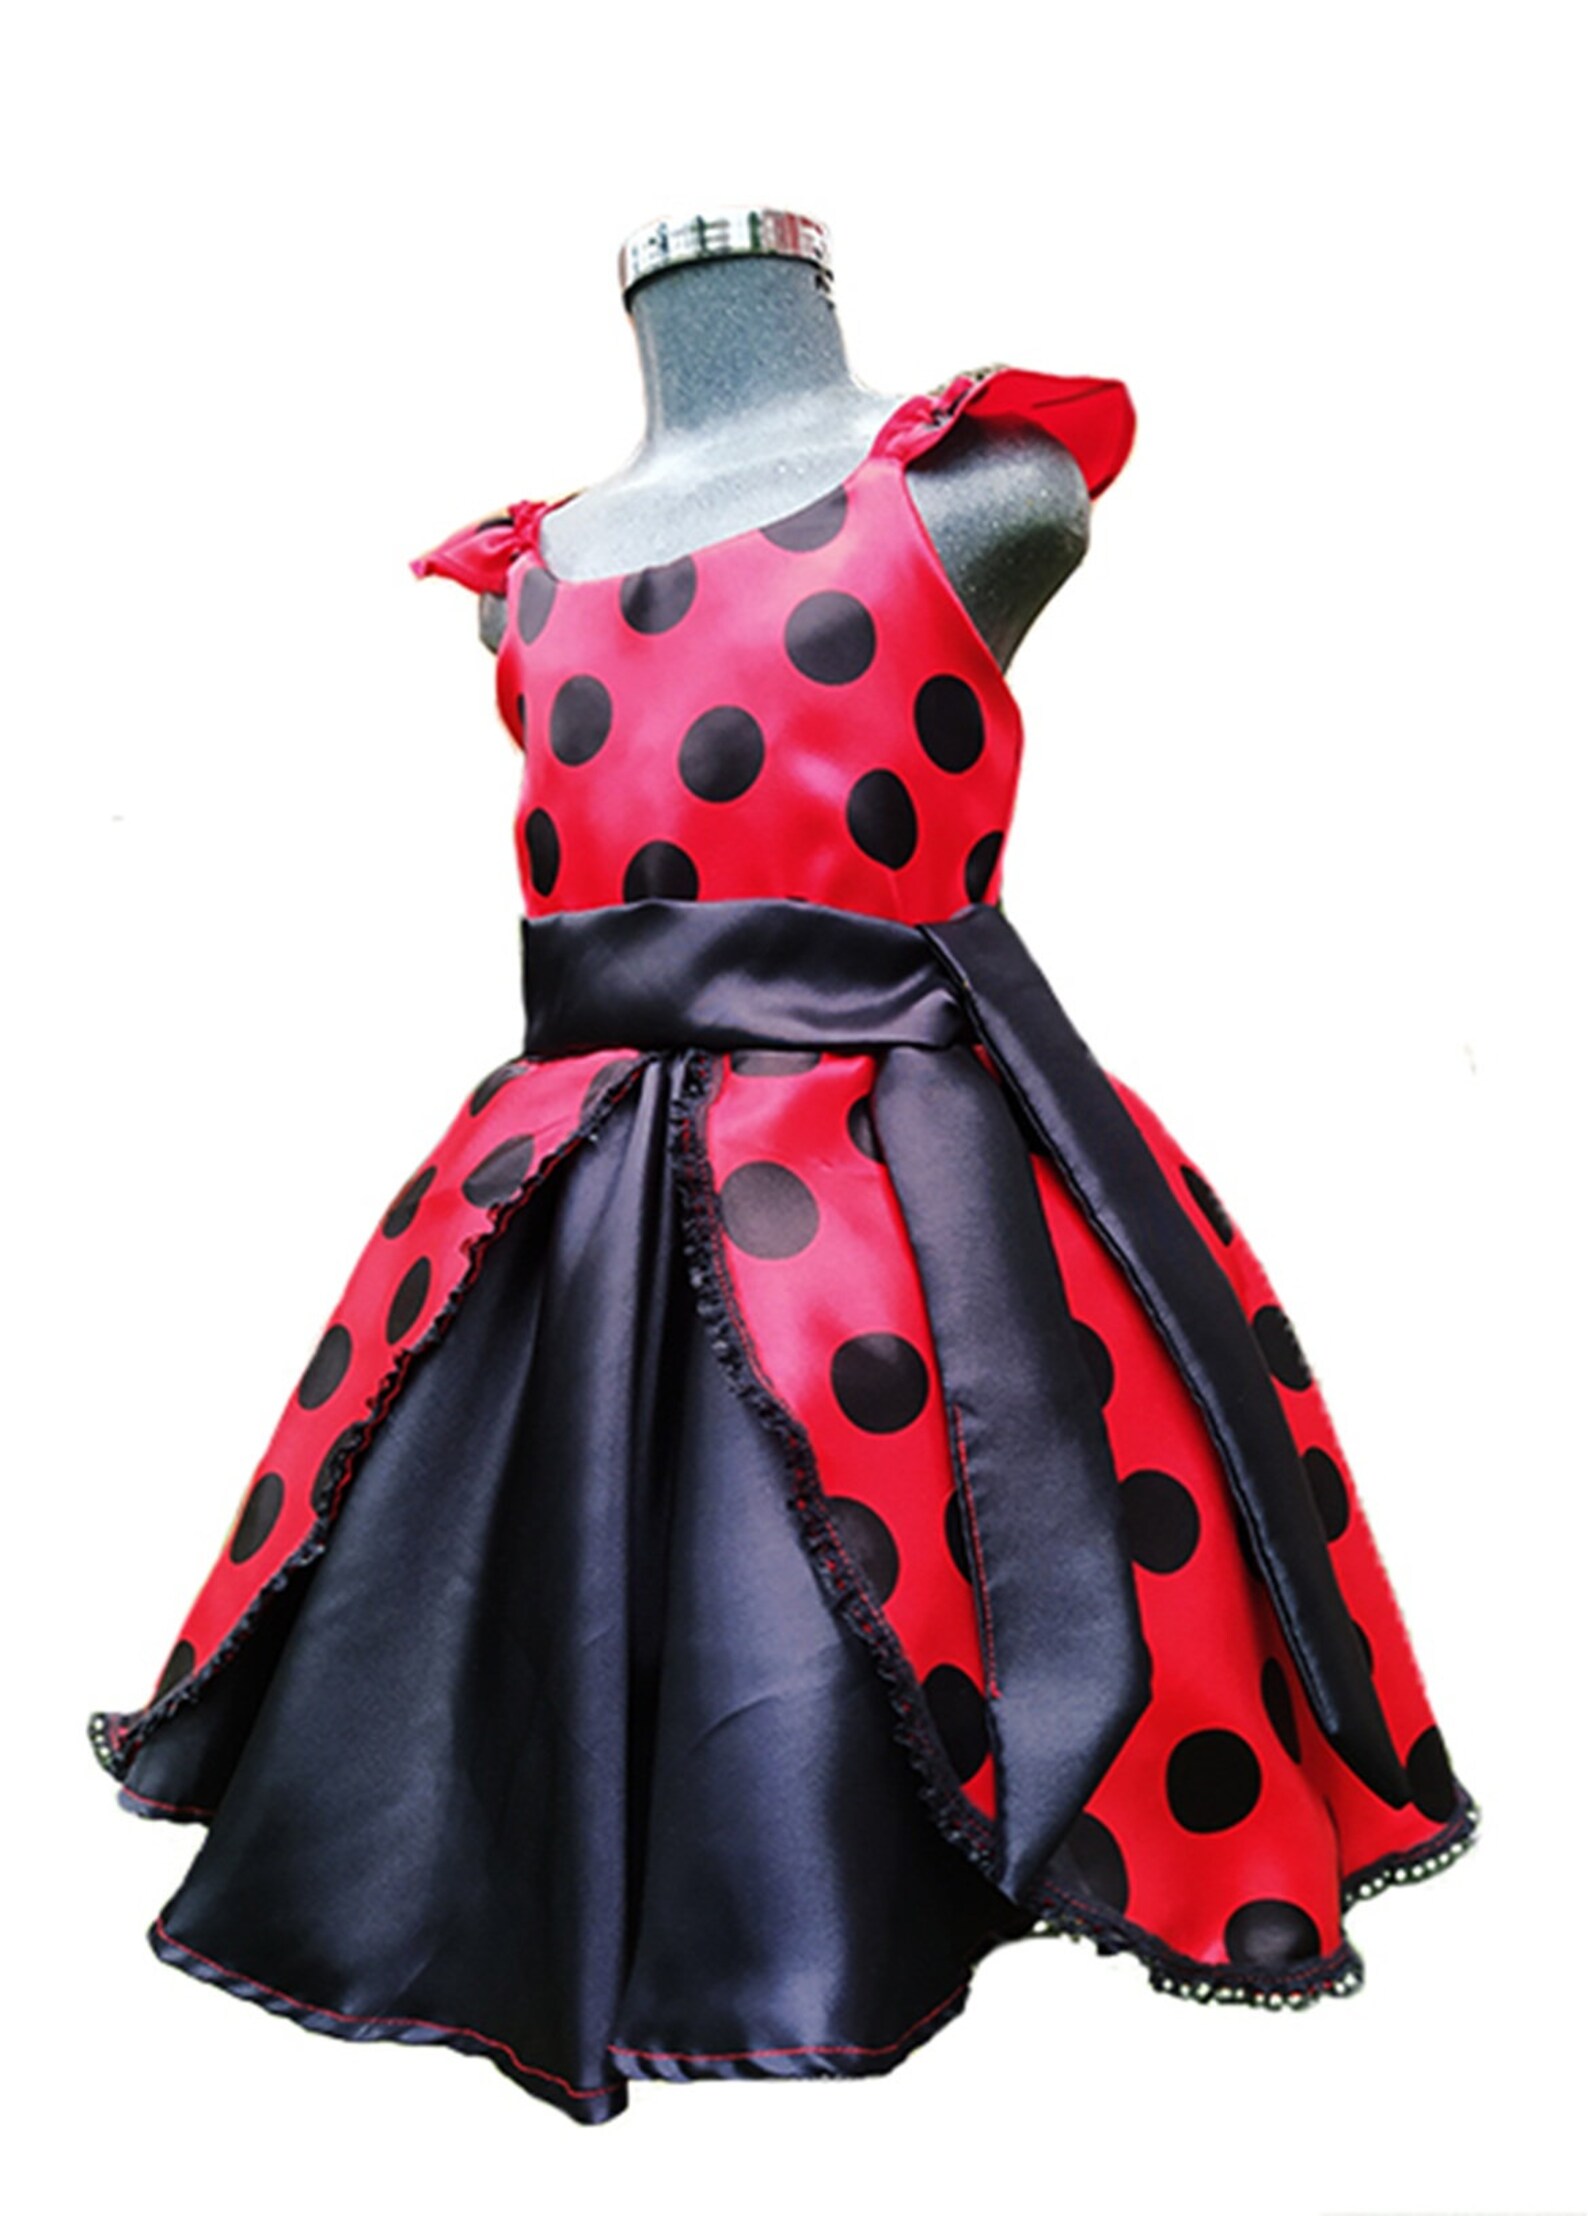 Ladybug dress / Ladybug outfit/ Ladybug Birthday day dress | Etsy